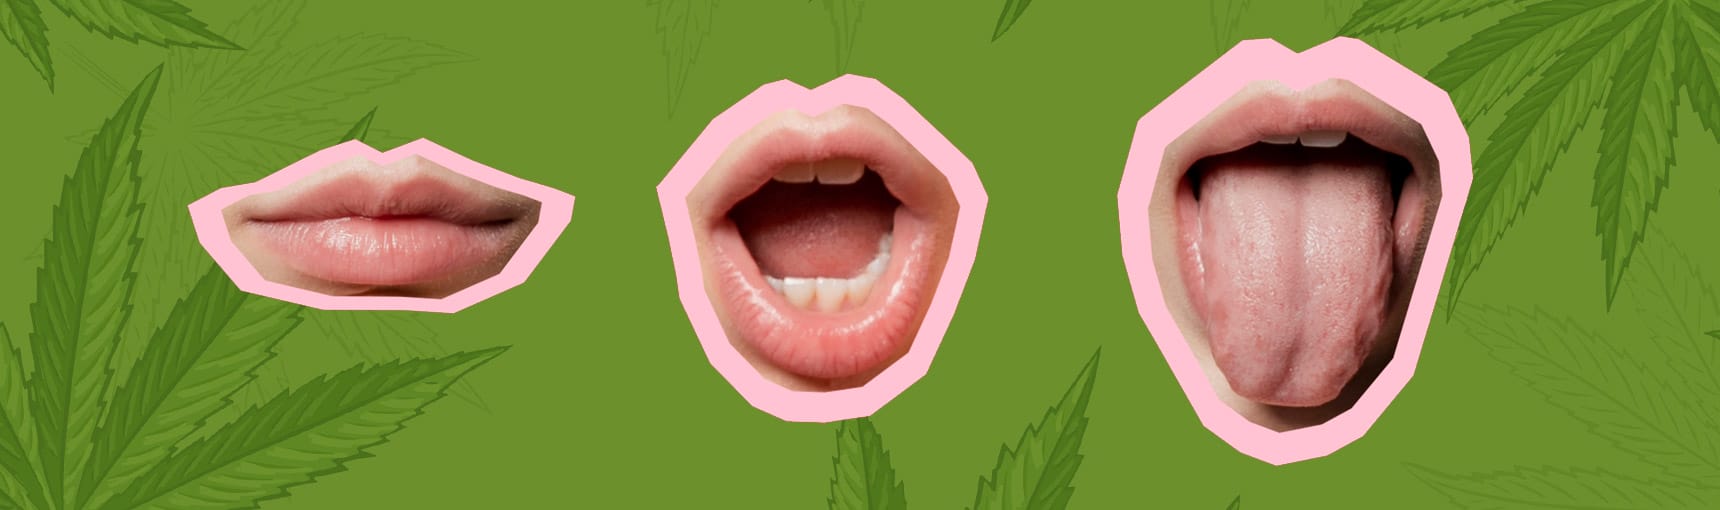 Das Geheimnis hinter dem Pappmaul: Warum Cannabis deinen Mund austrocknet